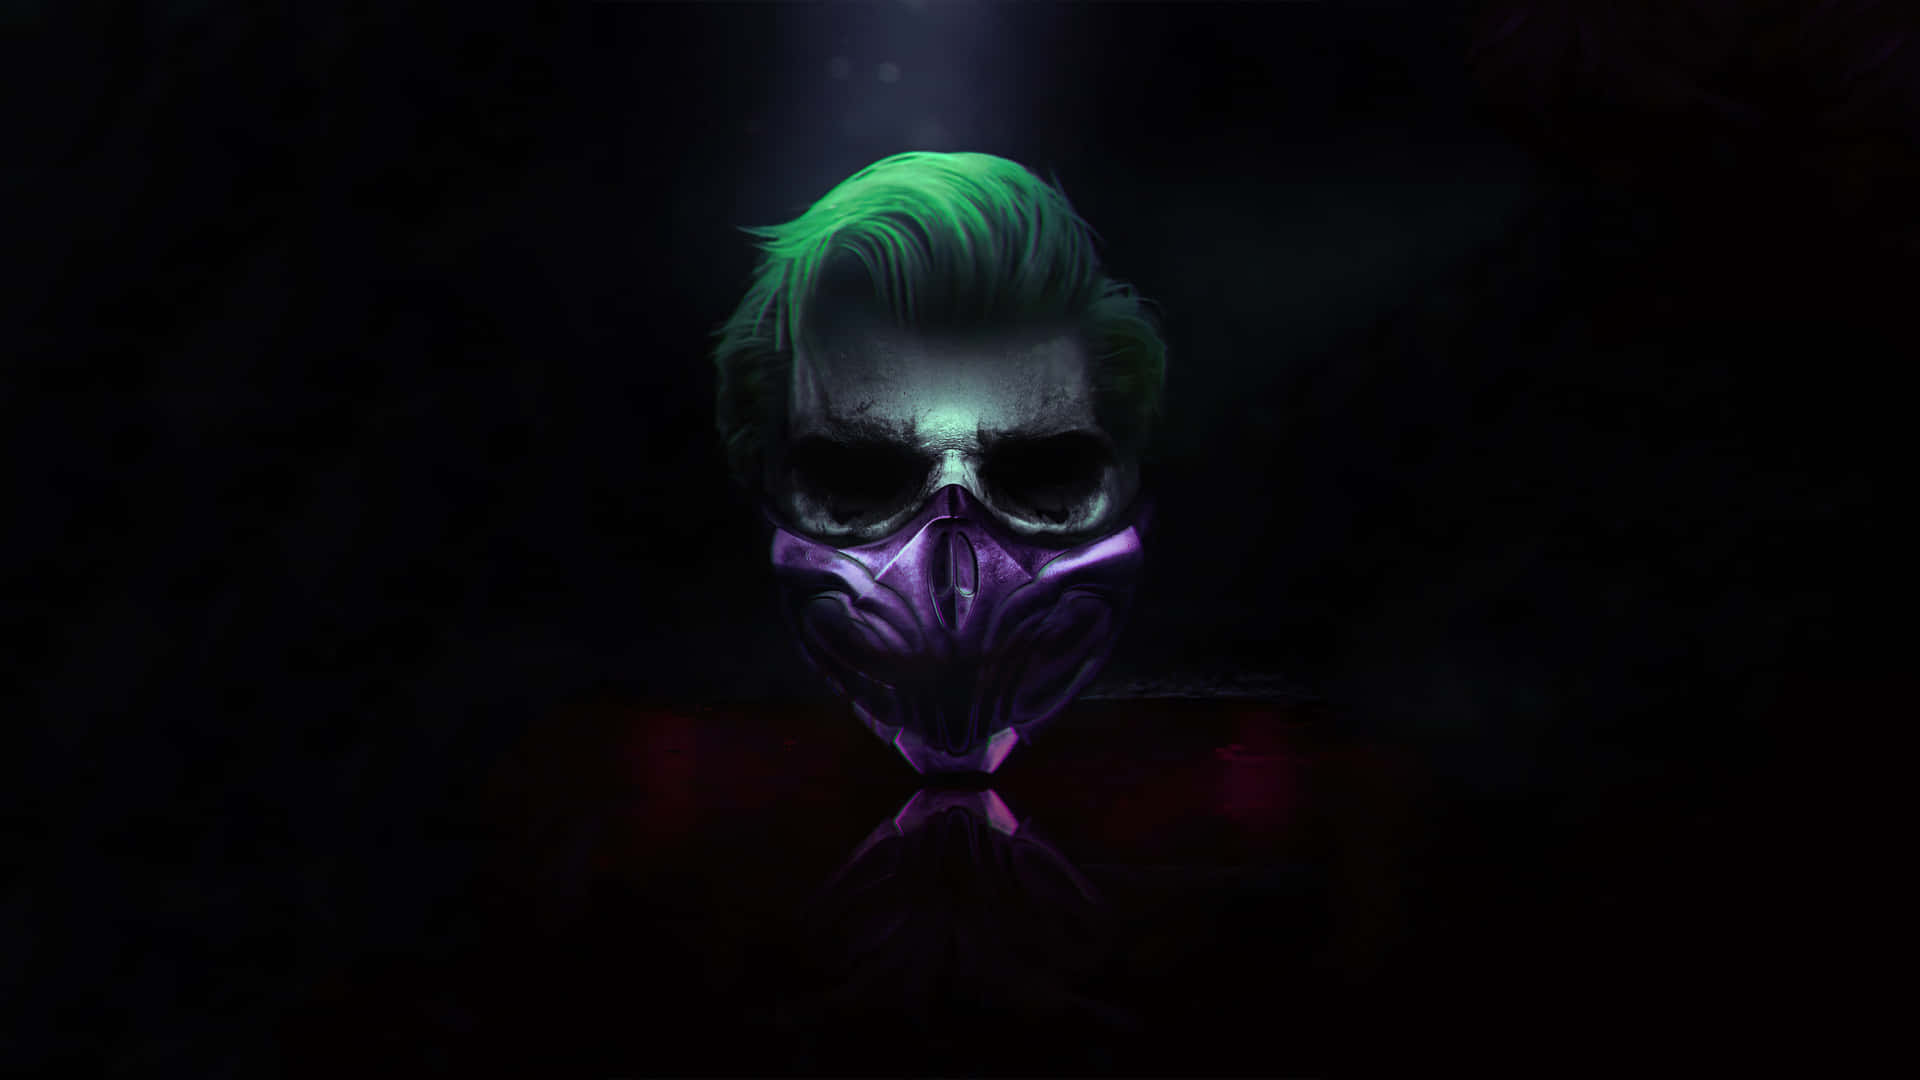 The Dark Joker - Mysterious and Menacing Presence Wallpaper